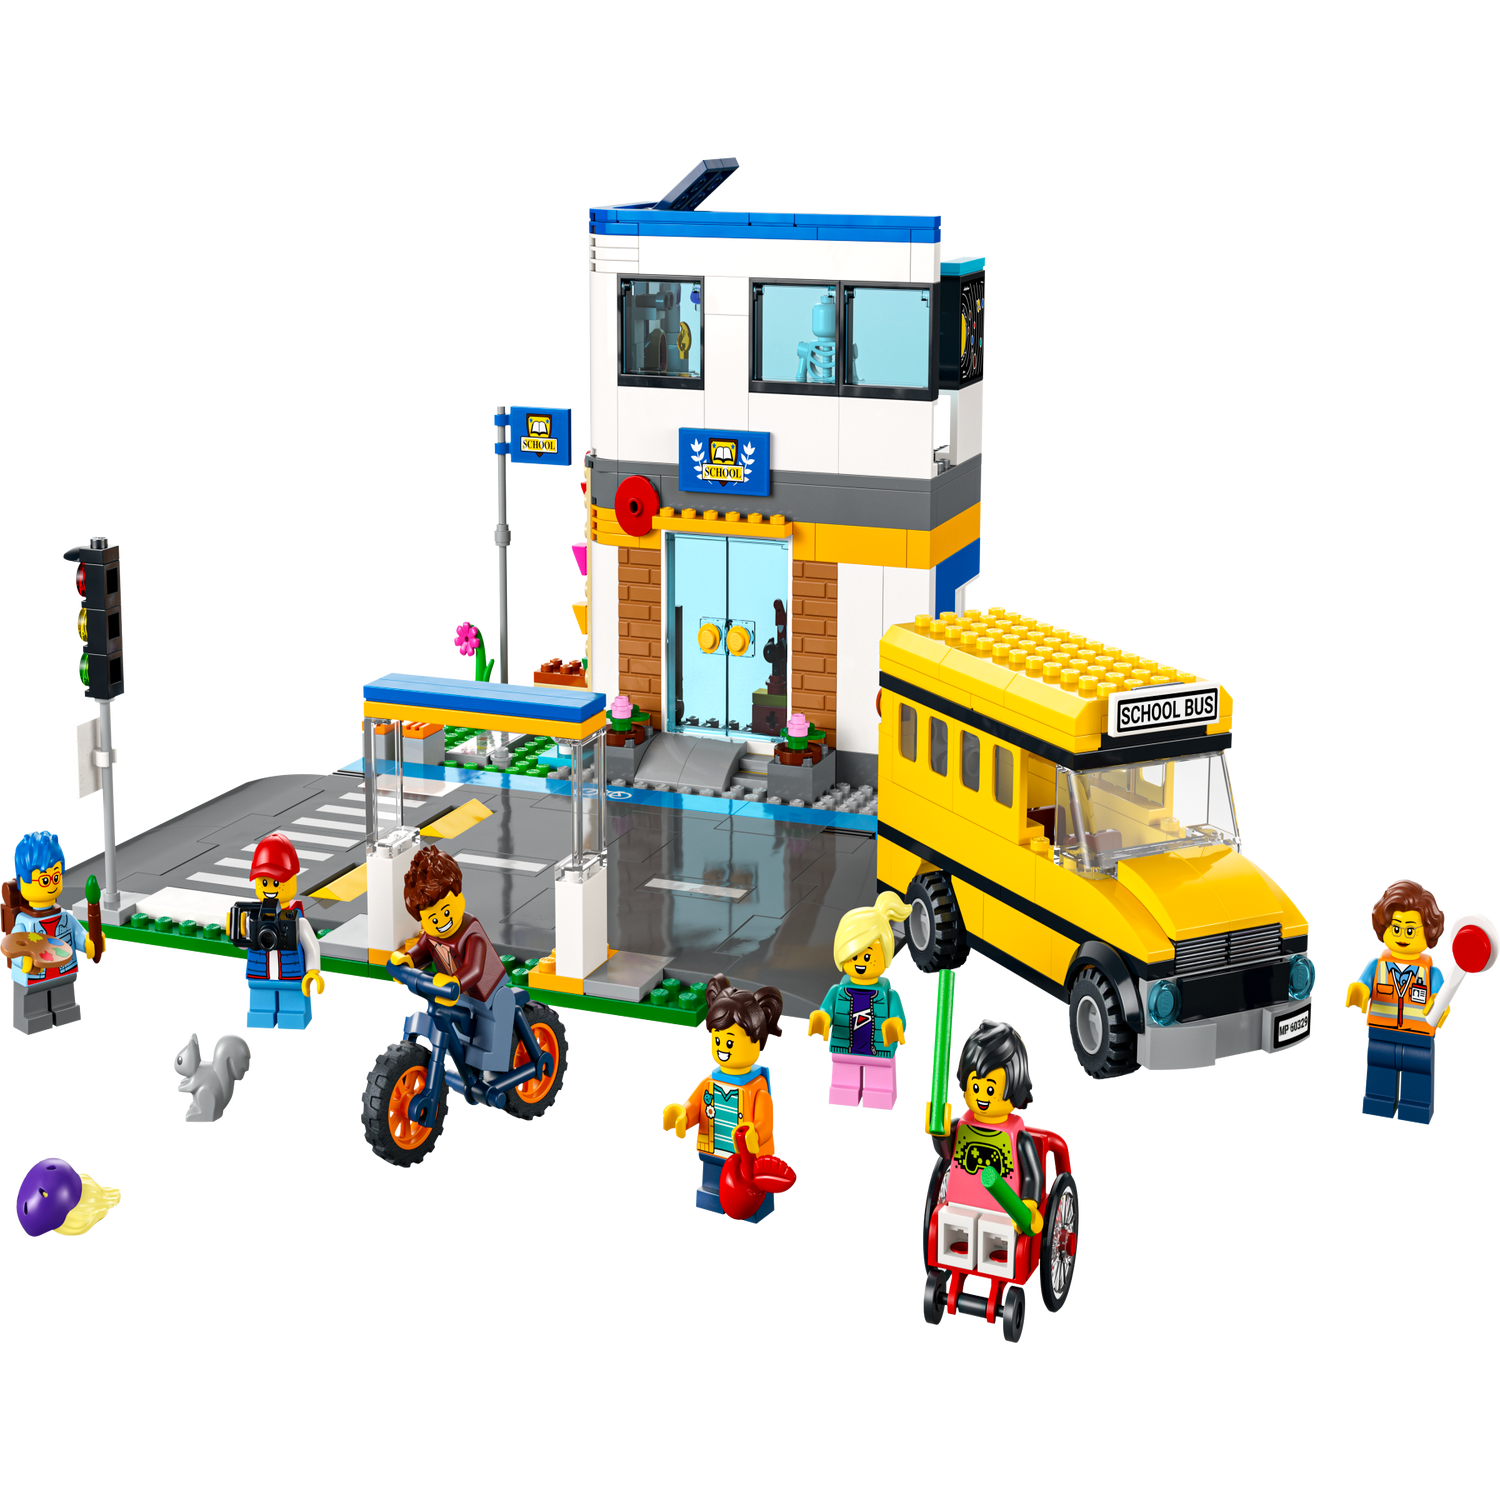 Bore Udsigt Træde tilbage School Day 60329 | City | Buy online at the Official LEGO® Shop US